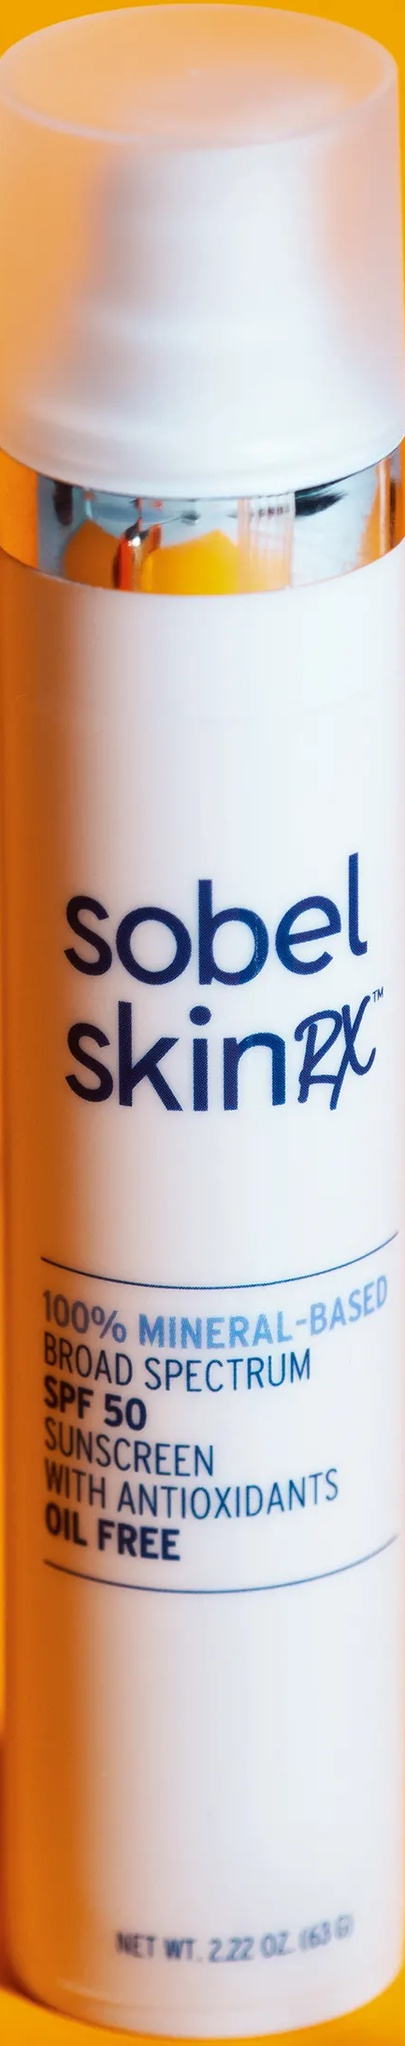 SOBEL SKIN Mineral-Based SPF 50 Sunscreen